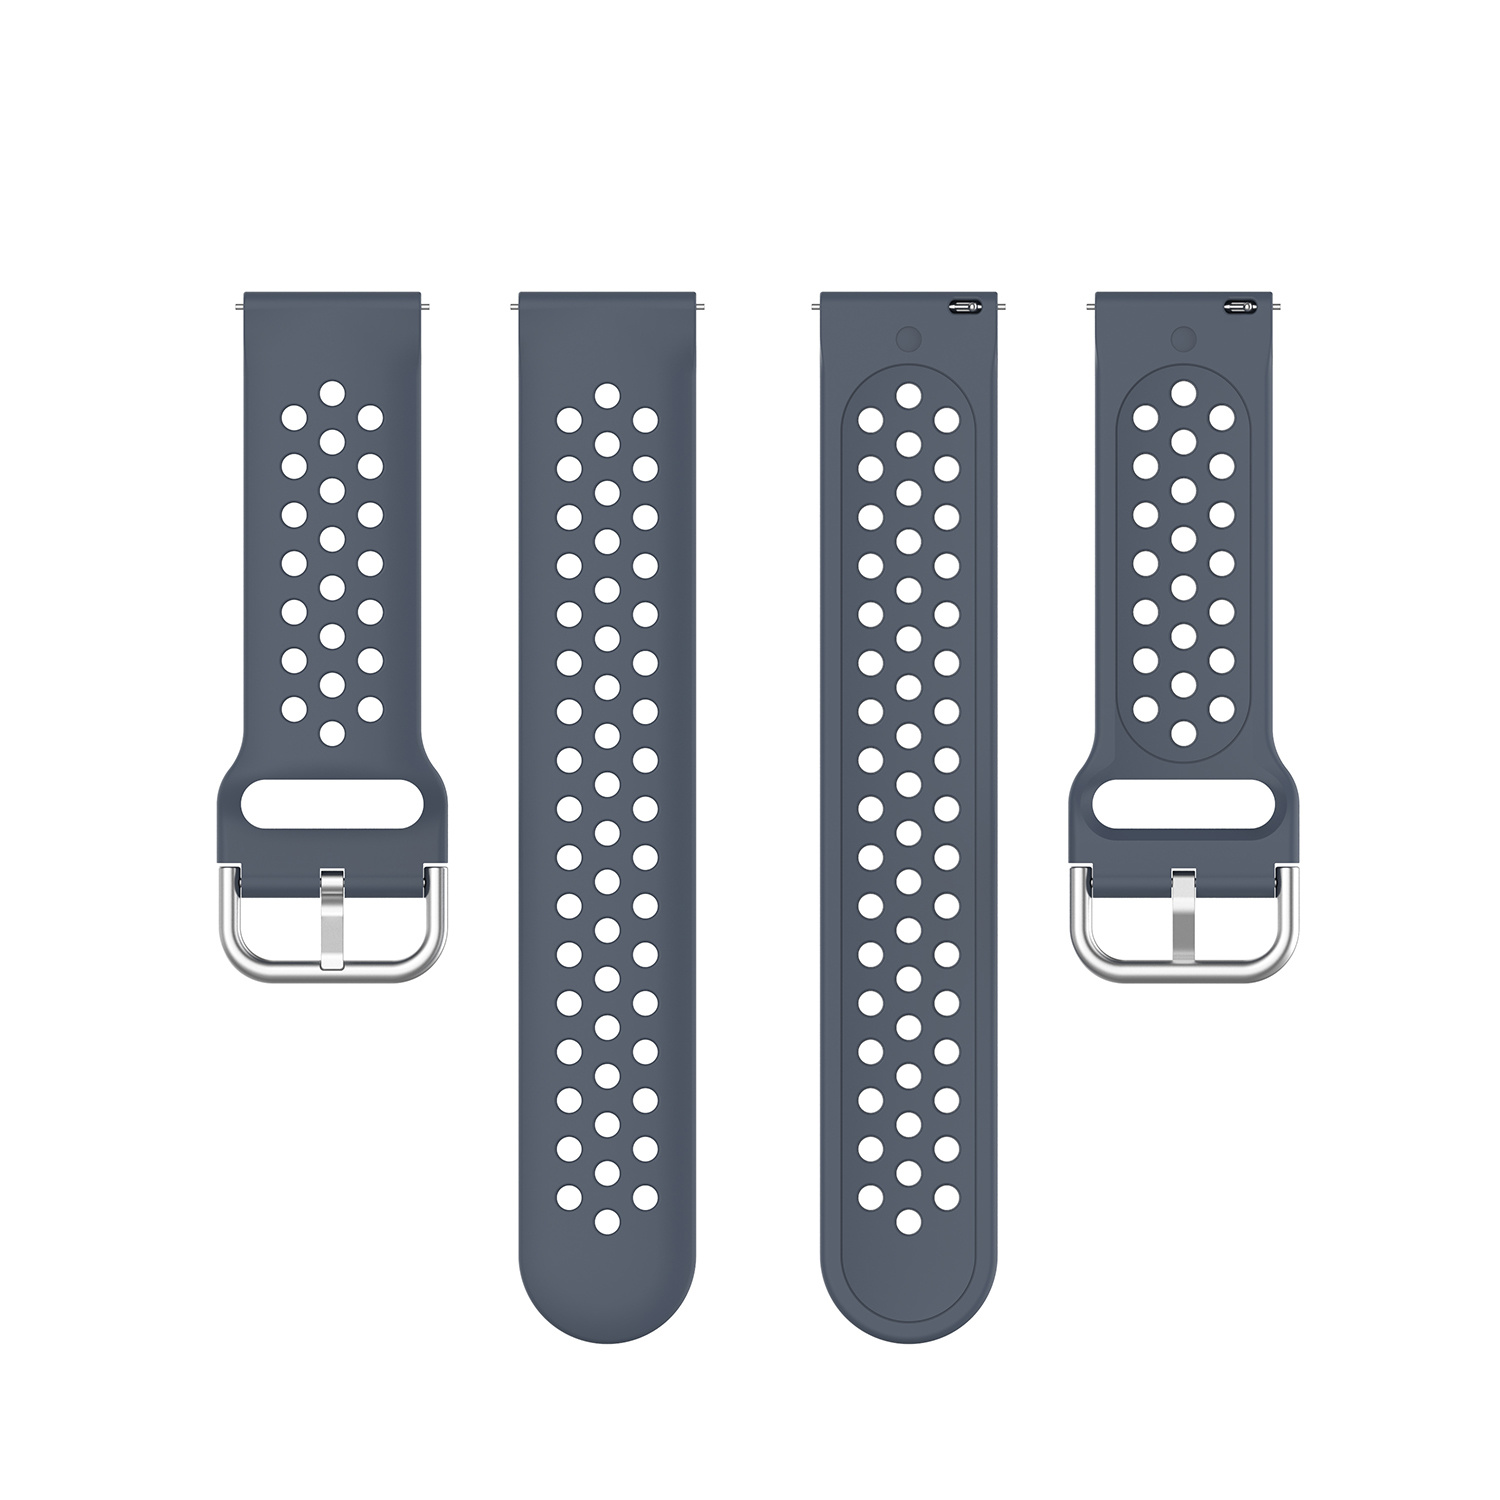 Cinturino doppia fibbia per Garmin Vivoactive / Vivomove sport - grigio